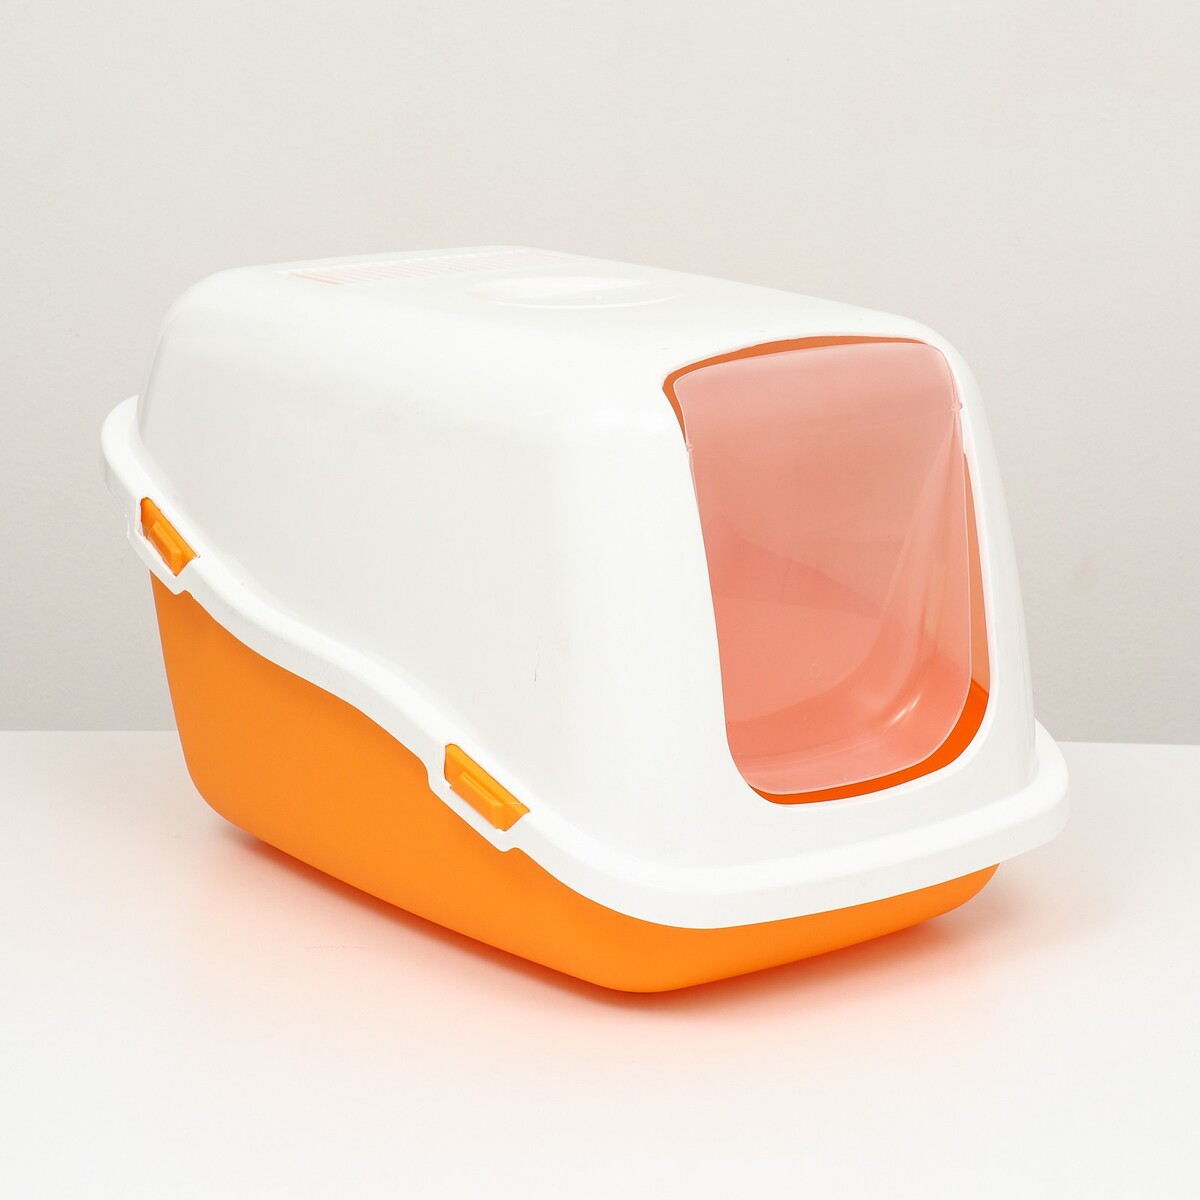 Pet-it домик-туалет для кошек comfort, (совок в наборе), 57x39x41, оранжевый/белый автомобильная led лампа dled h13 p26 4t c6 original 12v 6500k в наборе 2 шт